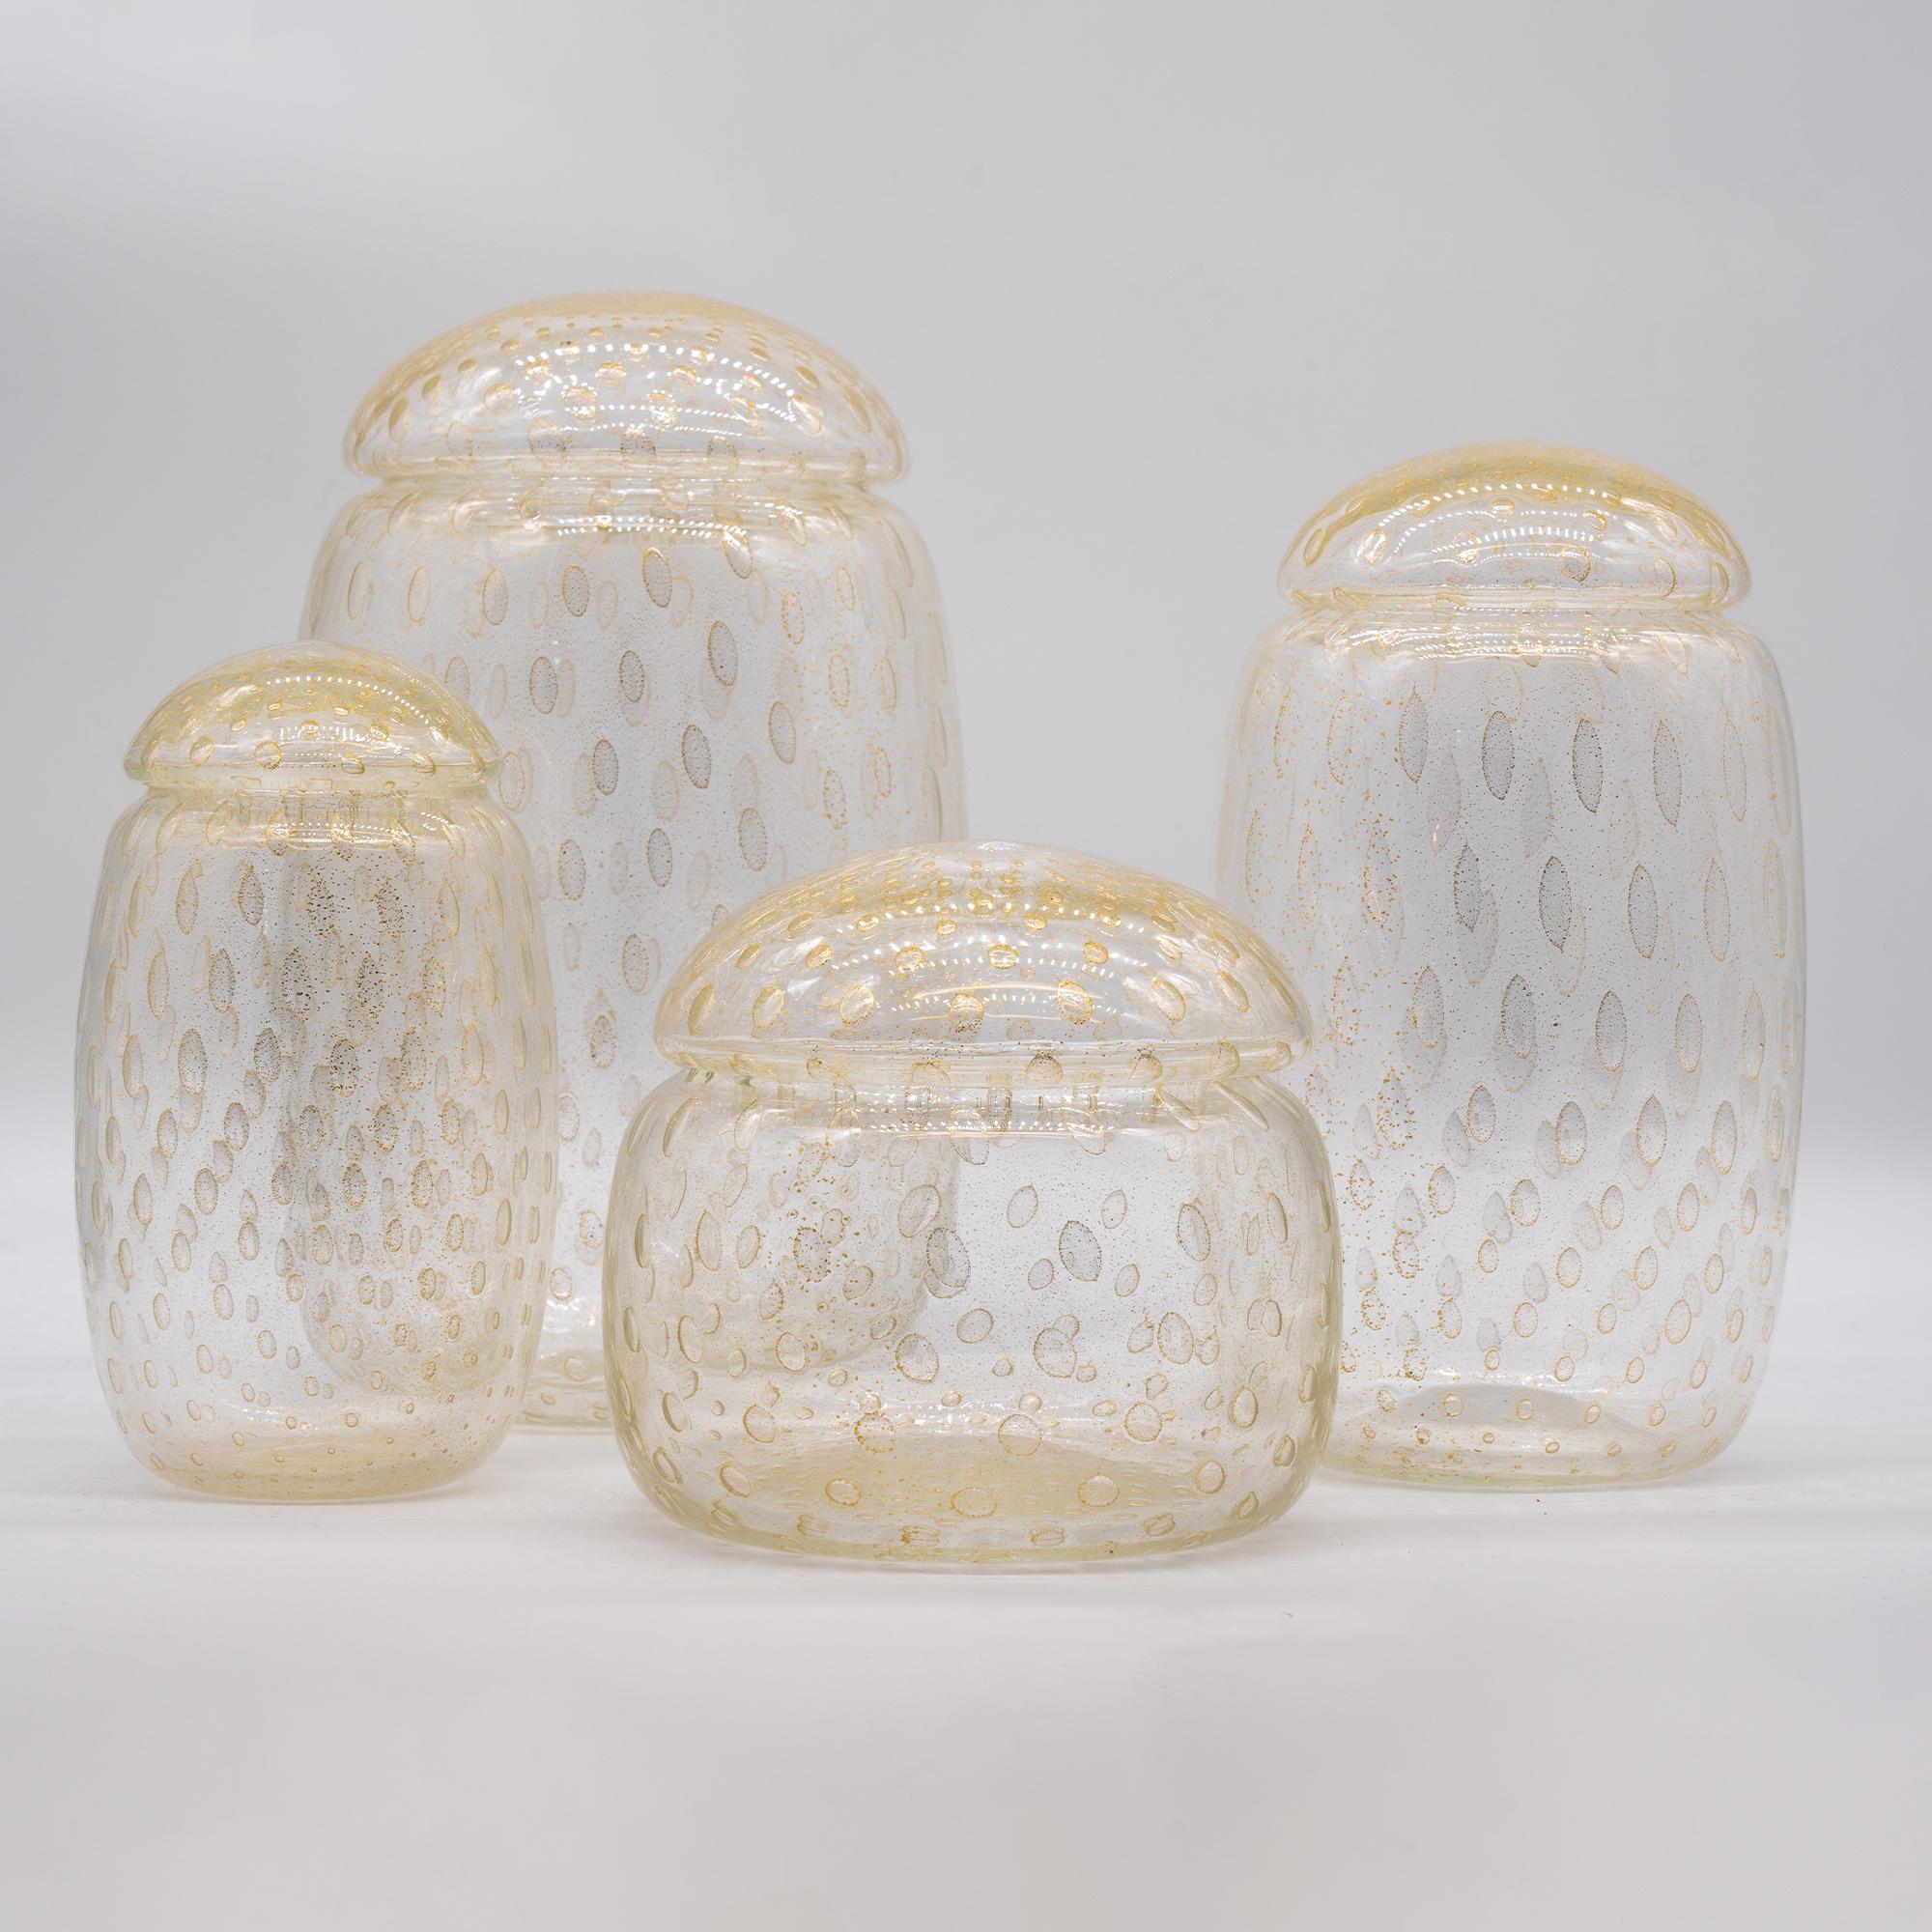 Murano Glas Potiches Vase, mundgeblasen, in Gold Farbe
Hergestellt in Murano und direkt vom Hersteller bezogen.

4er-Set in verschiedenen Größen, das große Modell hat einen Durchmesser von 18 cm und eine Höhe von 20 cm
Can verwendet werden, um